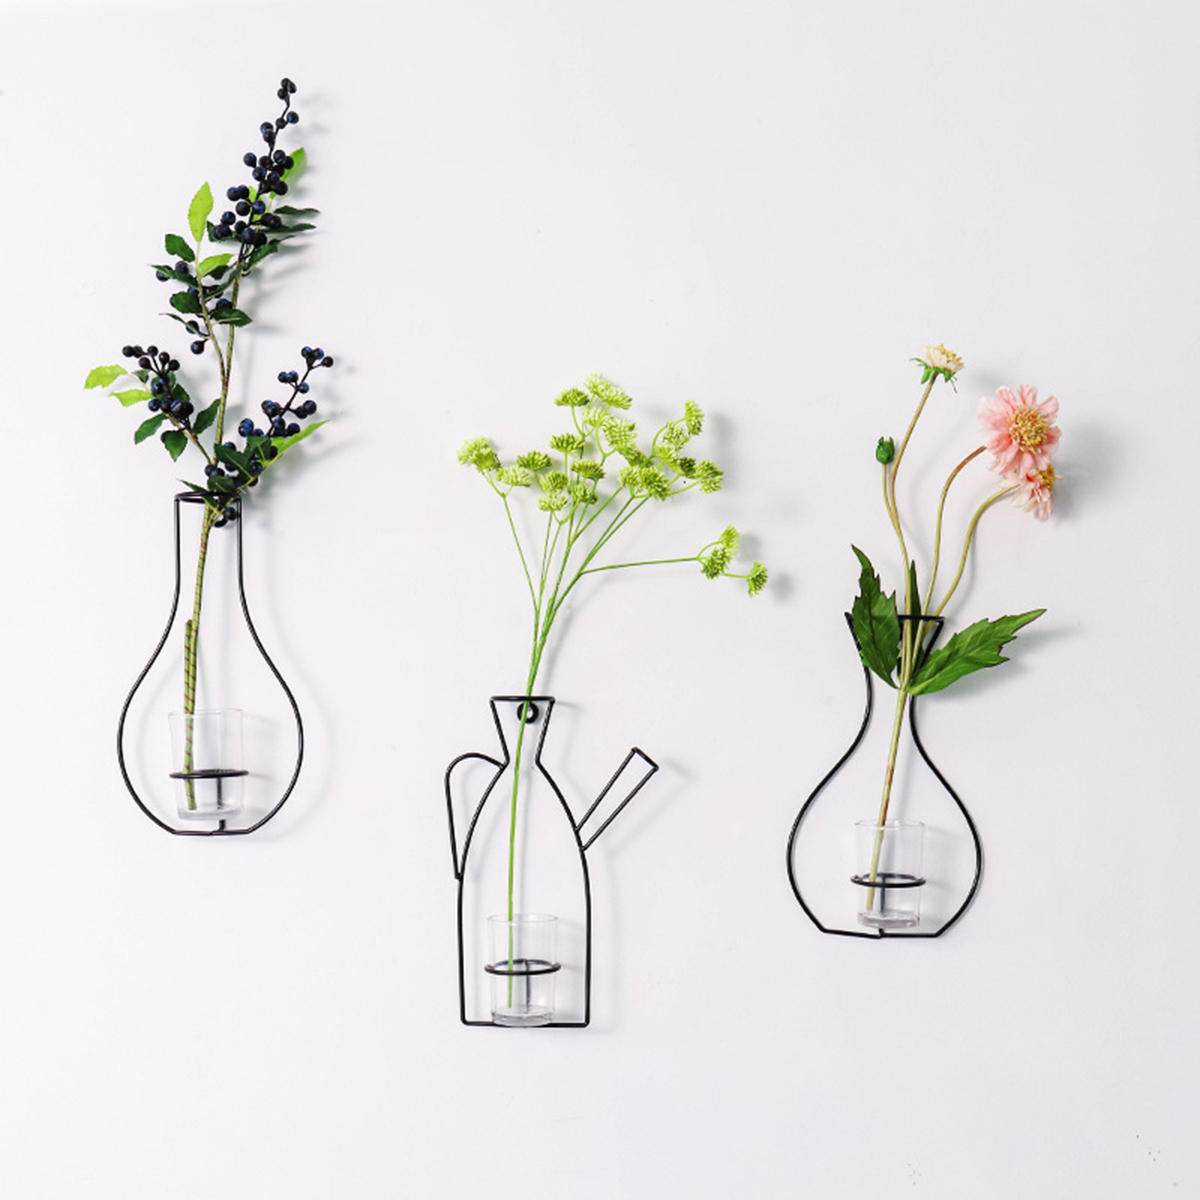 Nordic?metalen?vaas?glas?hydrocultuur?Plant Container ornamenten Home Decor accessoires